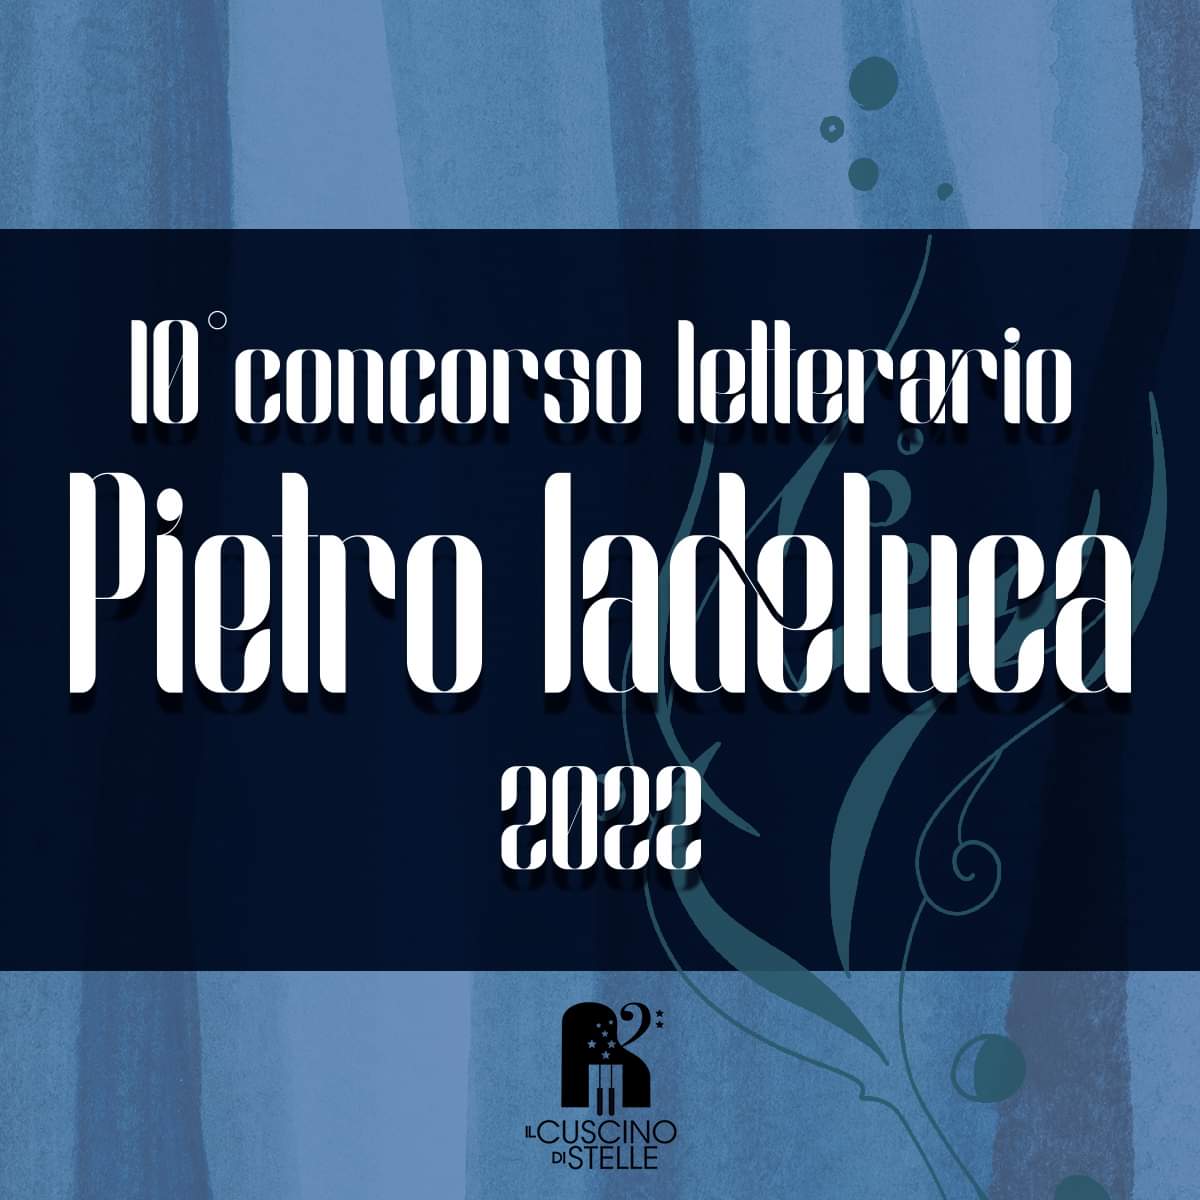 10° Concorso Letterario “Pietro Iadeluca”